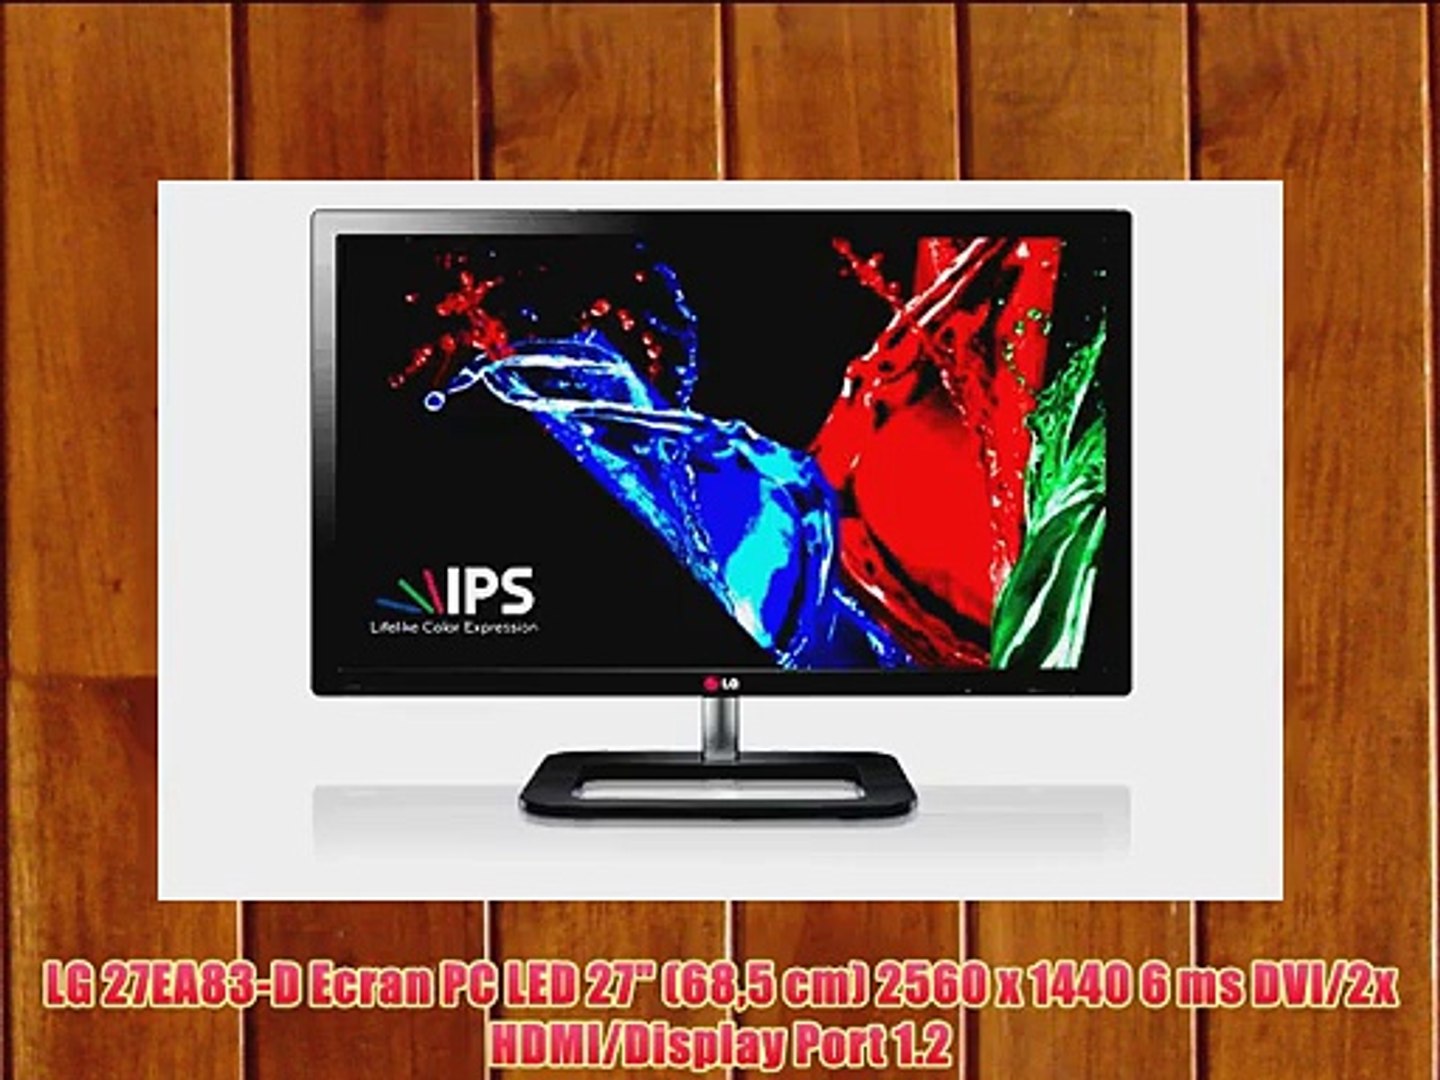 ⁣LG 27EA83-D Ecran PC LED 27 (685 cm) 2560 x 1440 6 ms DVI/2x HDMI/Display Port 1.2